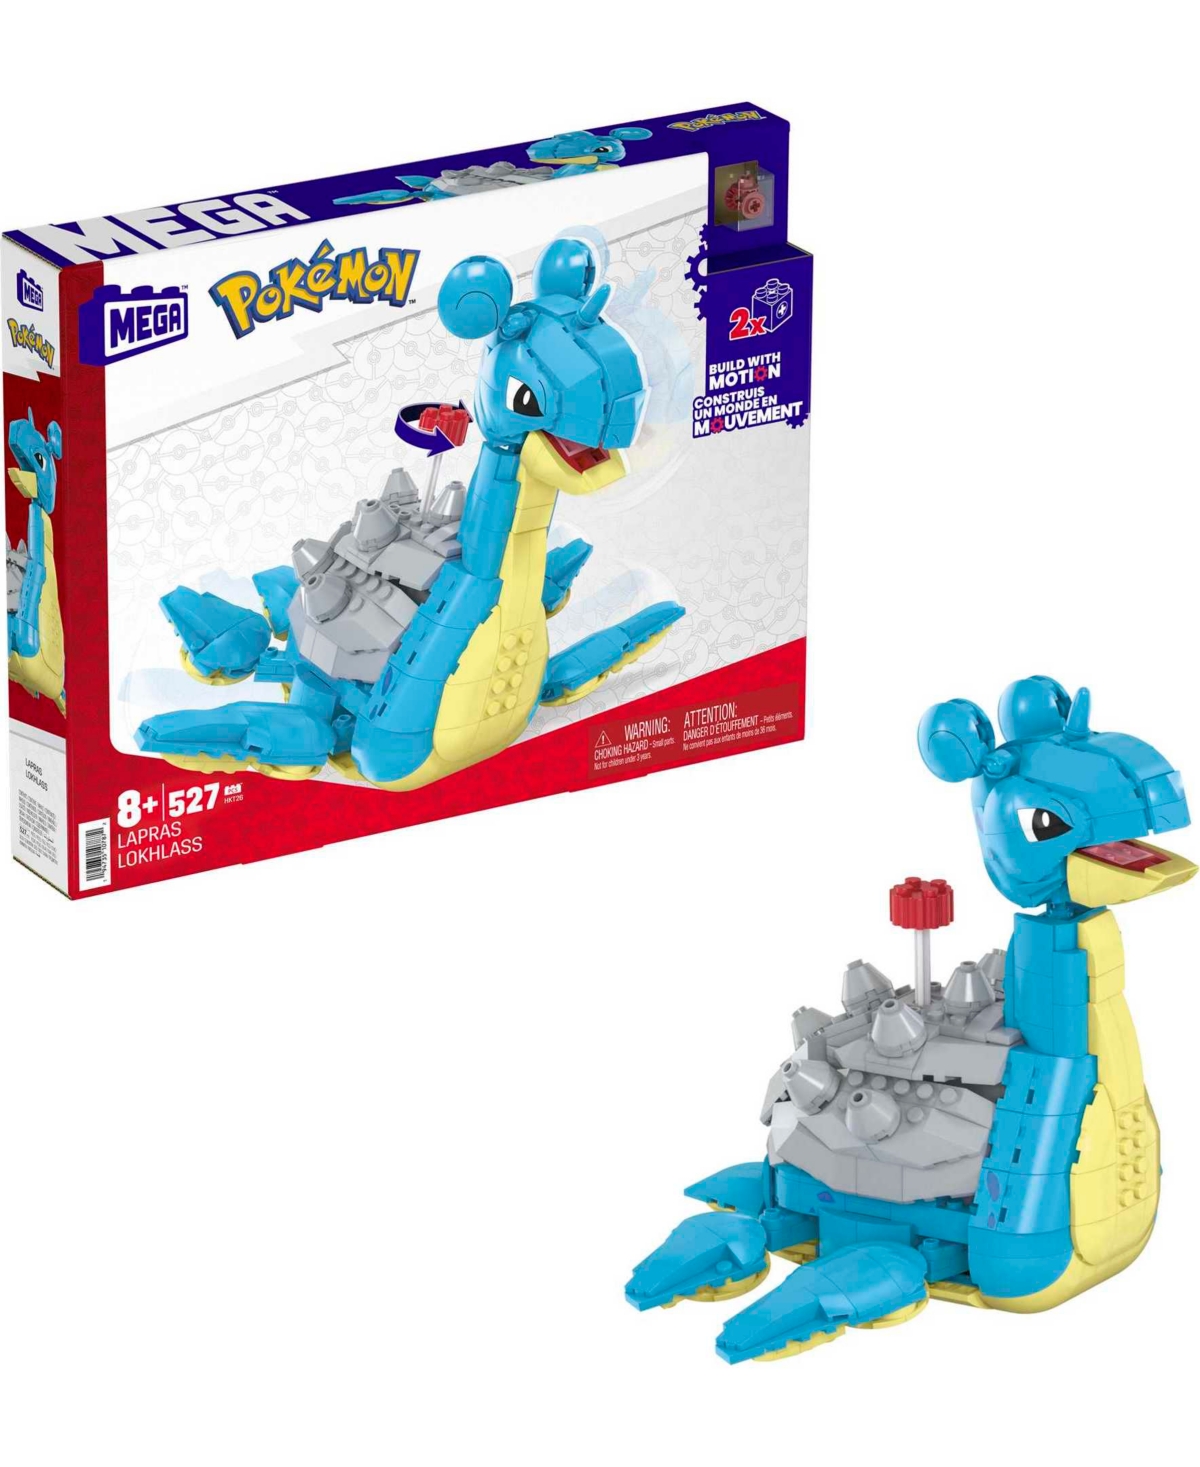 Pokémon Mega Pokemon Lapras Building Toy Kit With Action Figure (527 Pieces) For Kids In Multi-color